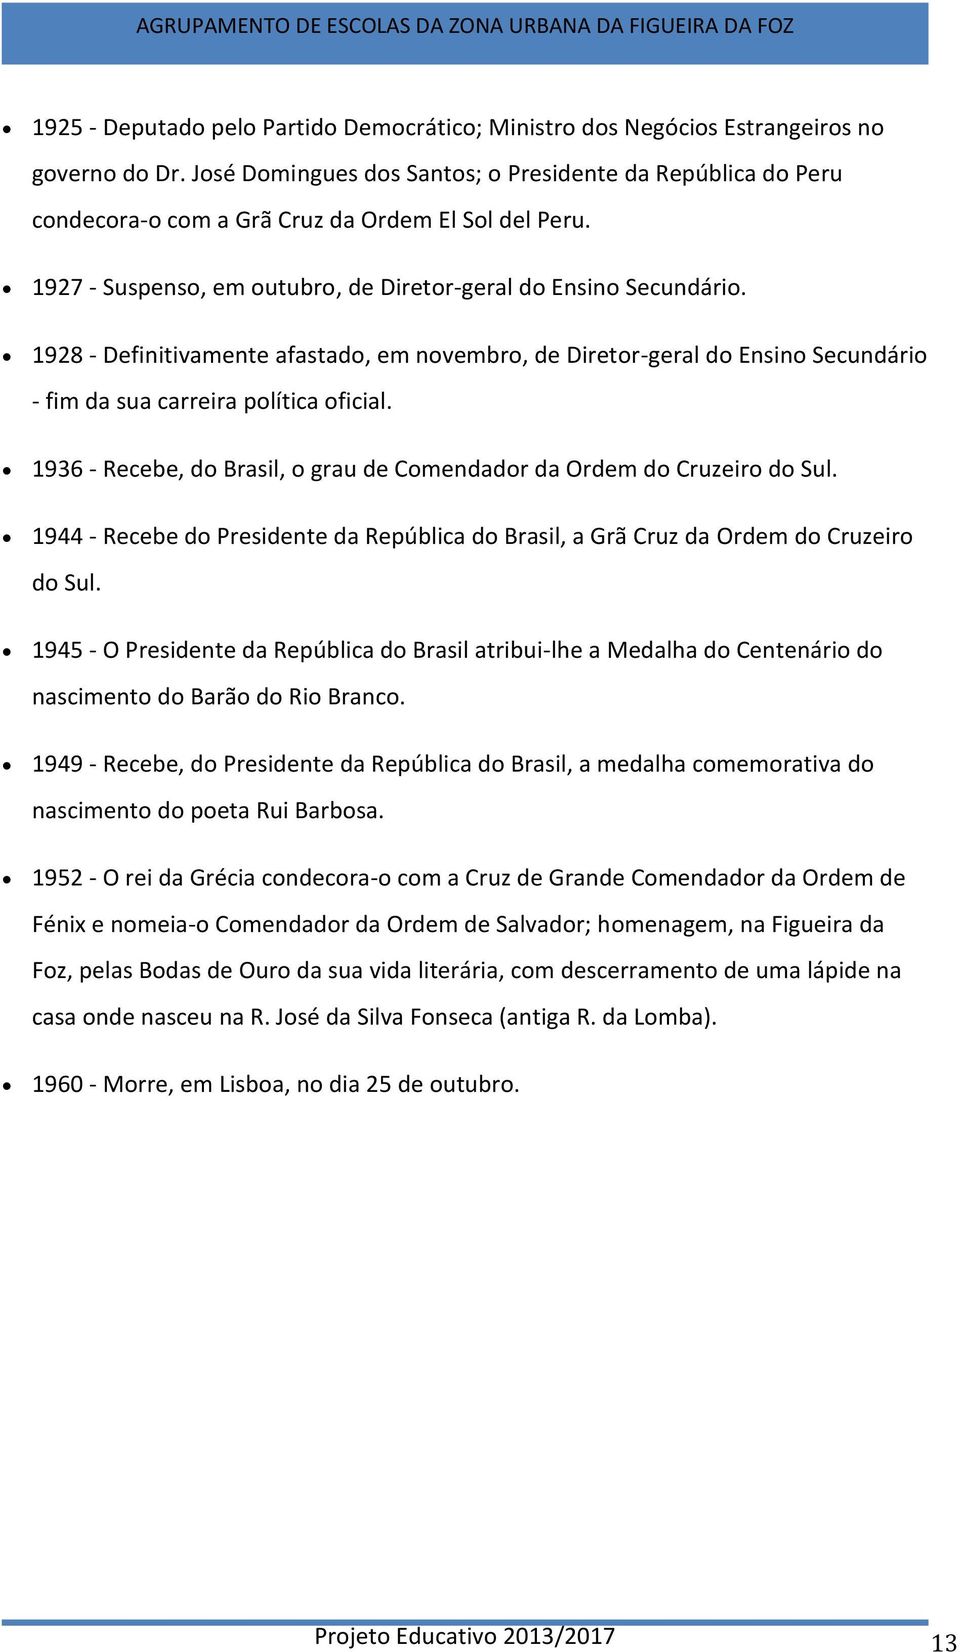 1928 - Definitivamente afastado, em novembro, de Diretor-geral do Ensino Secundário - fim da sua carreira política oficial. 1936 - Recebe, do Brasil, o grau de Comendador da Ordem do Cruzeiro do Sul.